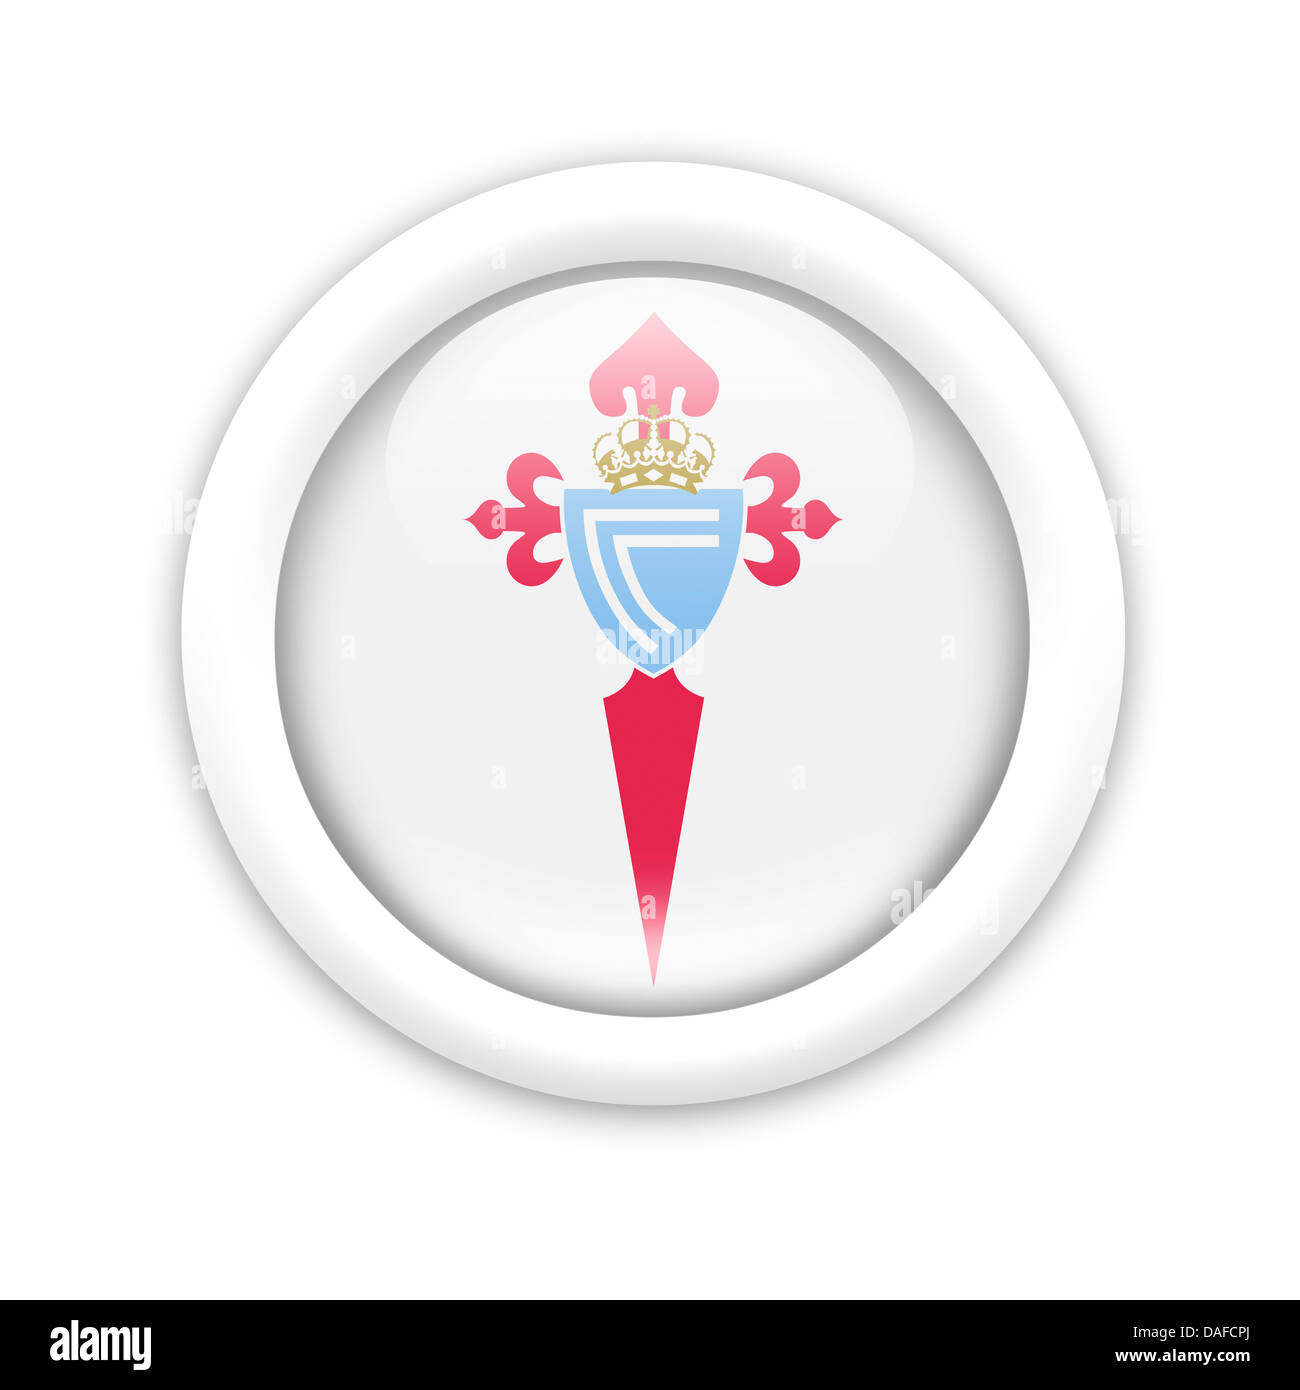 Celta de vigo symbol icon logo flag emblem Stock Photo - Alamy